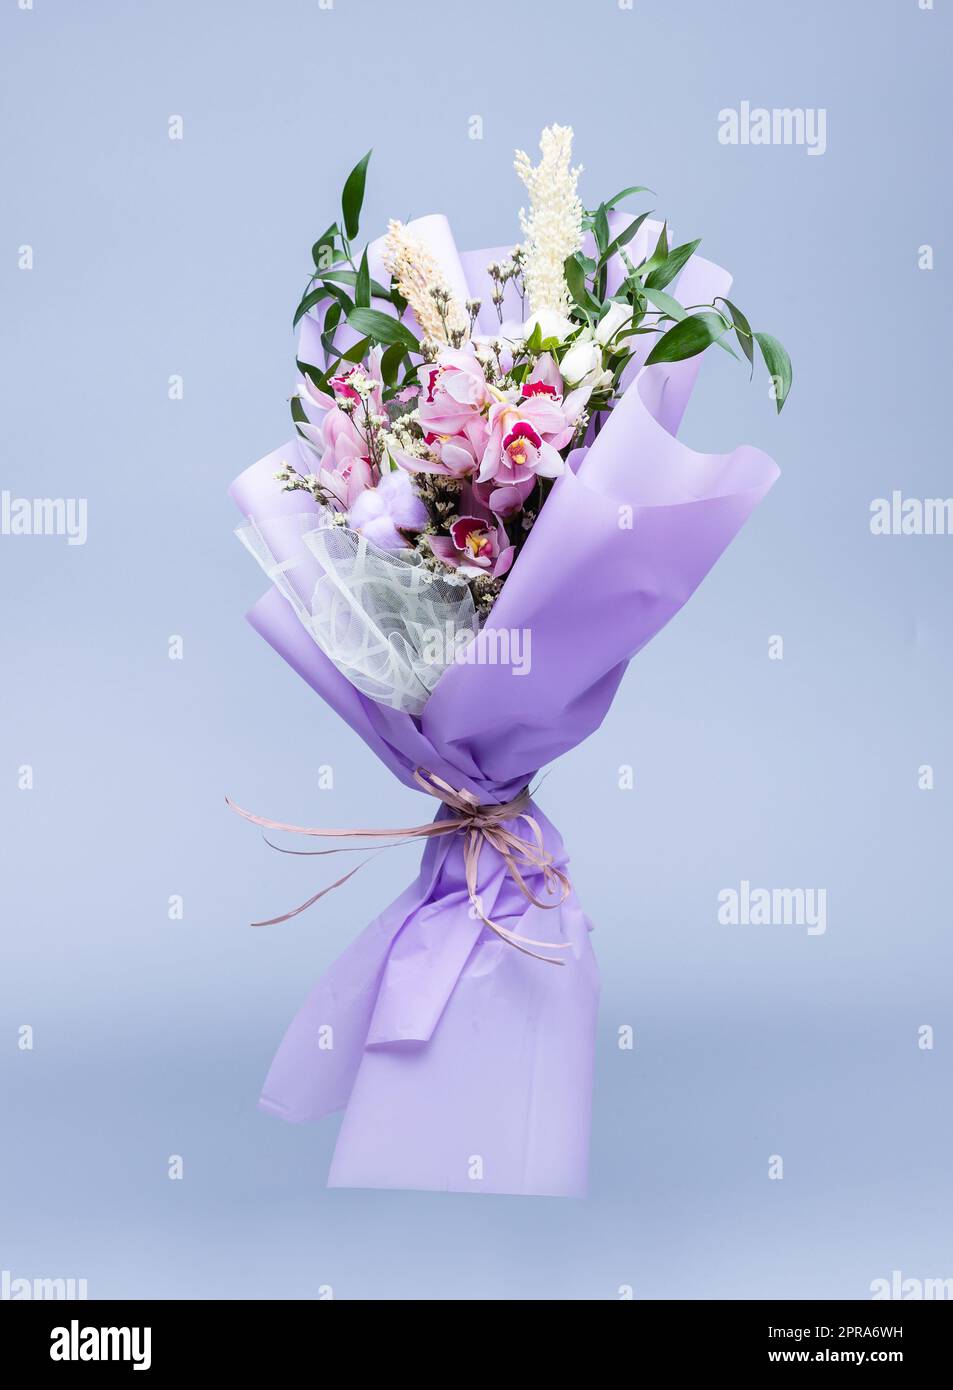 Bouquet de fleurs naturelles enveloppées de papier à tracer floral dans un vase sur fond bleu. Banque D'Images